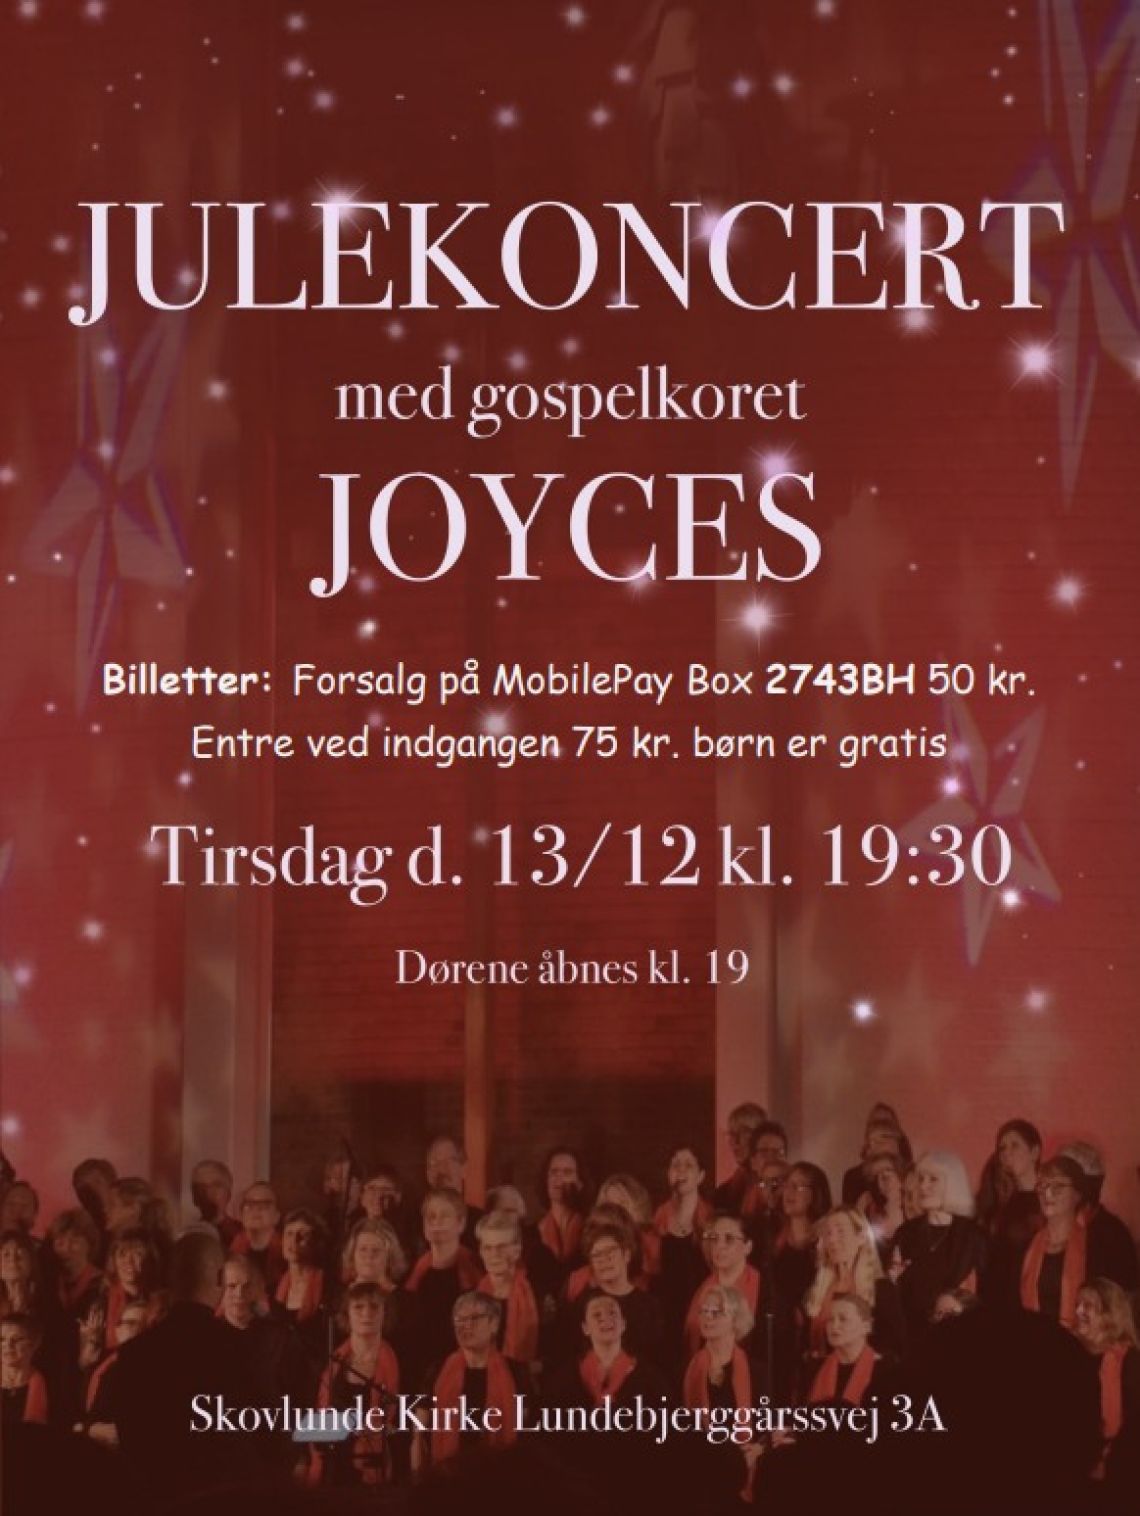 Gospelkoret Joyces synger Julekoncert 2022